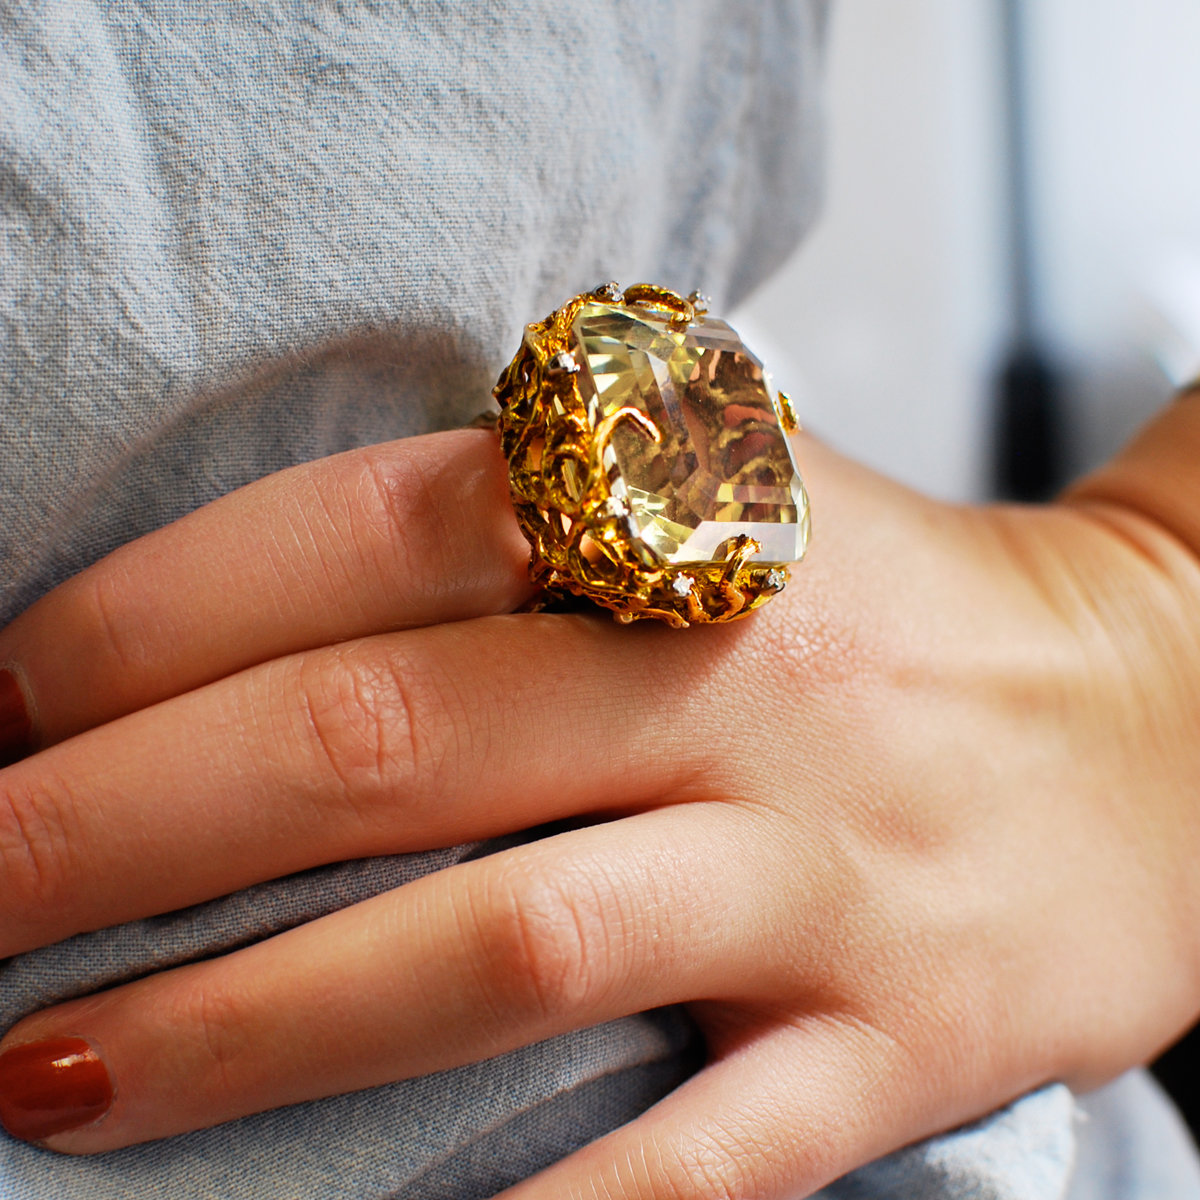 Красивые кольца. Массивные кольца. Крупные кольца. Перстень с крупным камнем. Кольцо оказалось золотым